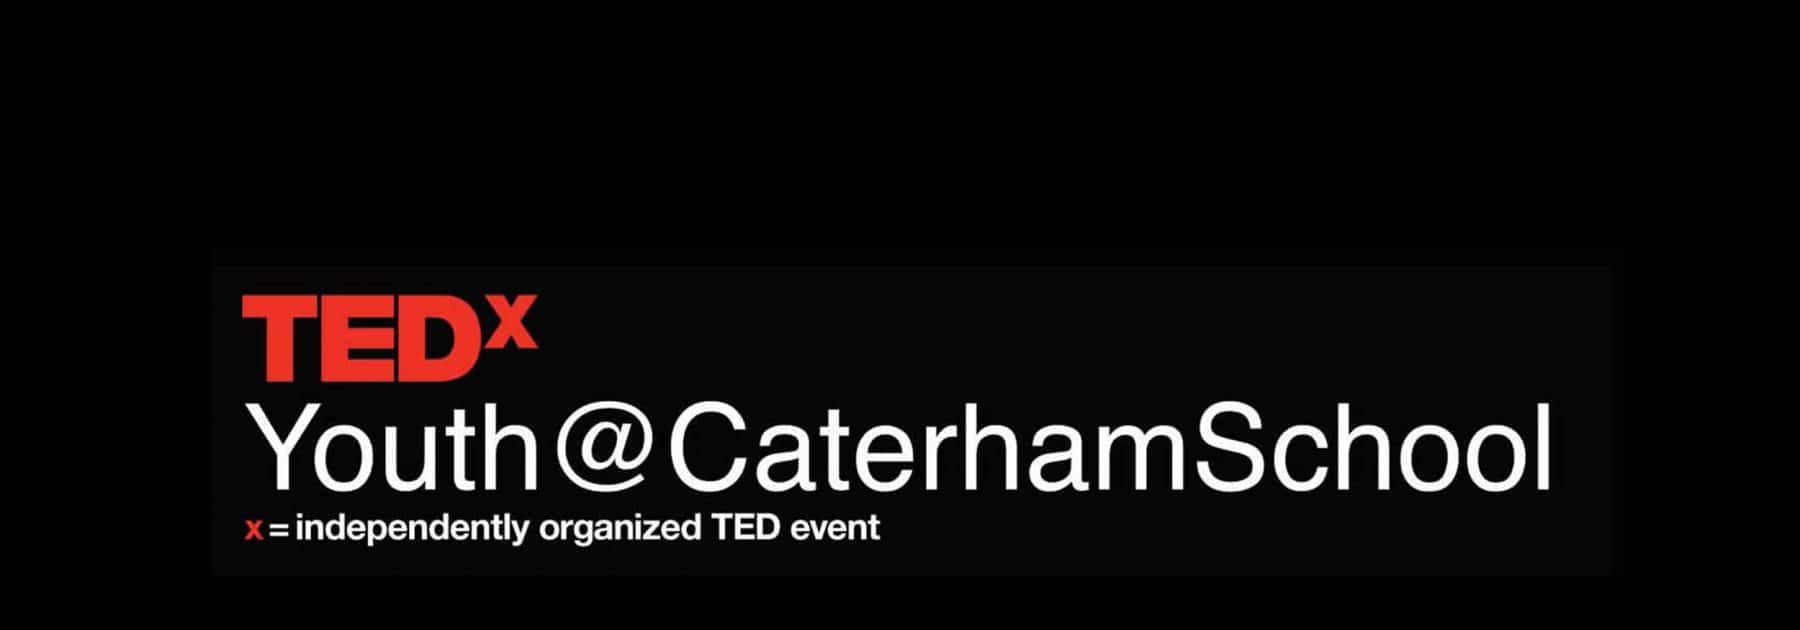 TEDx 2021 Programme